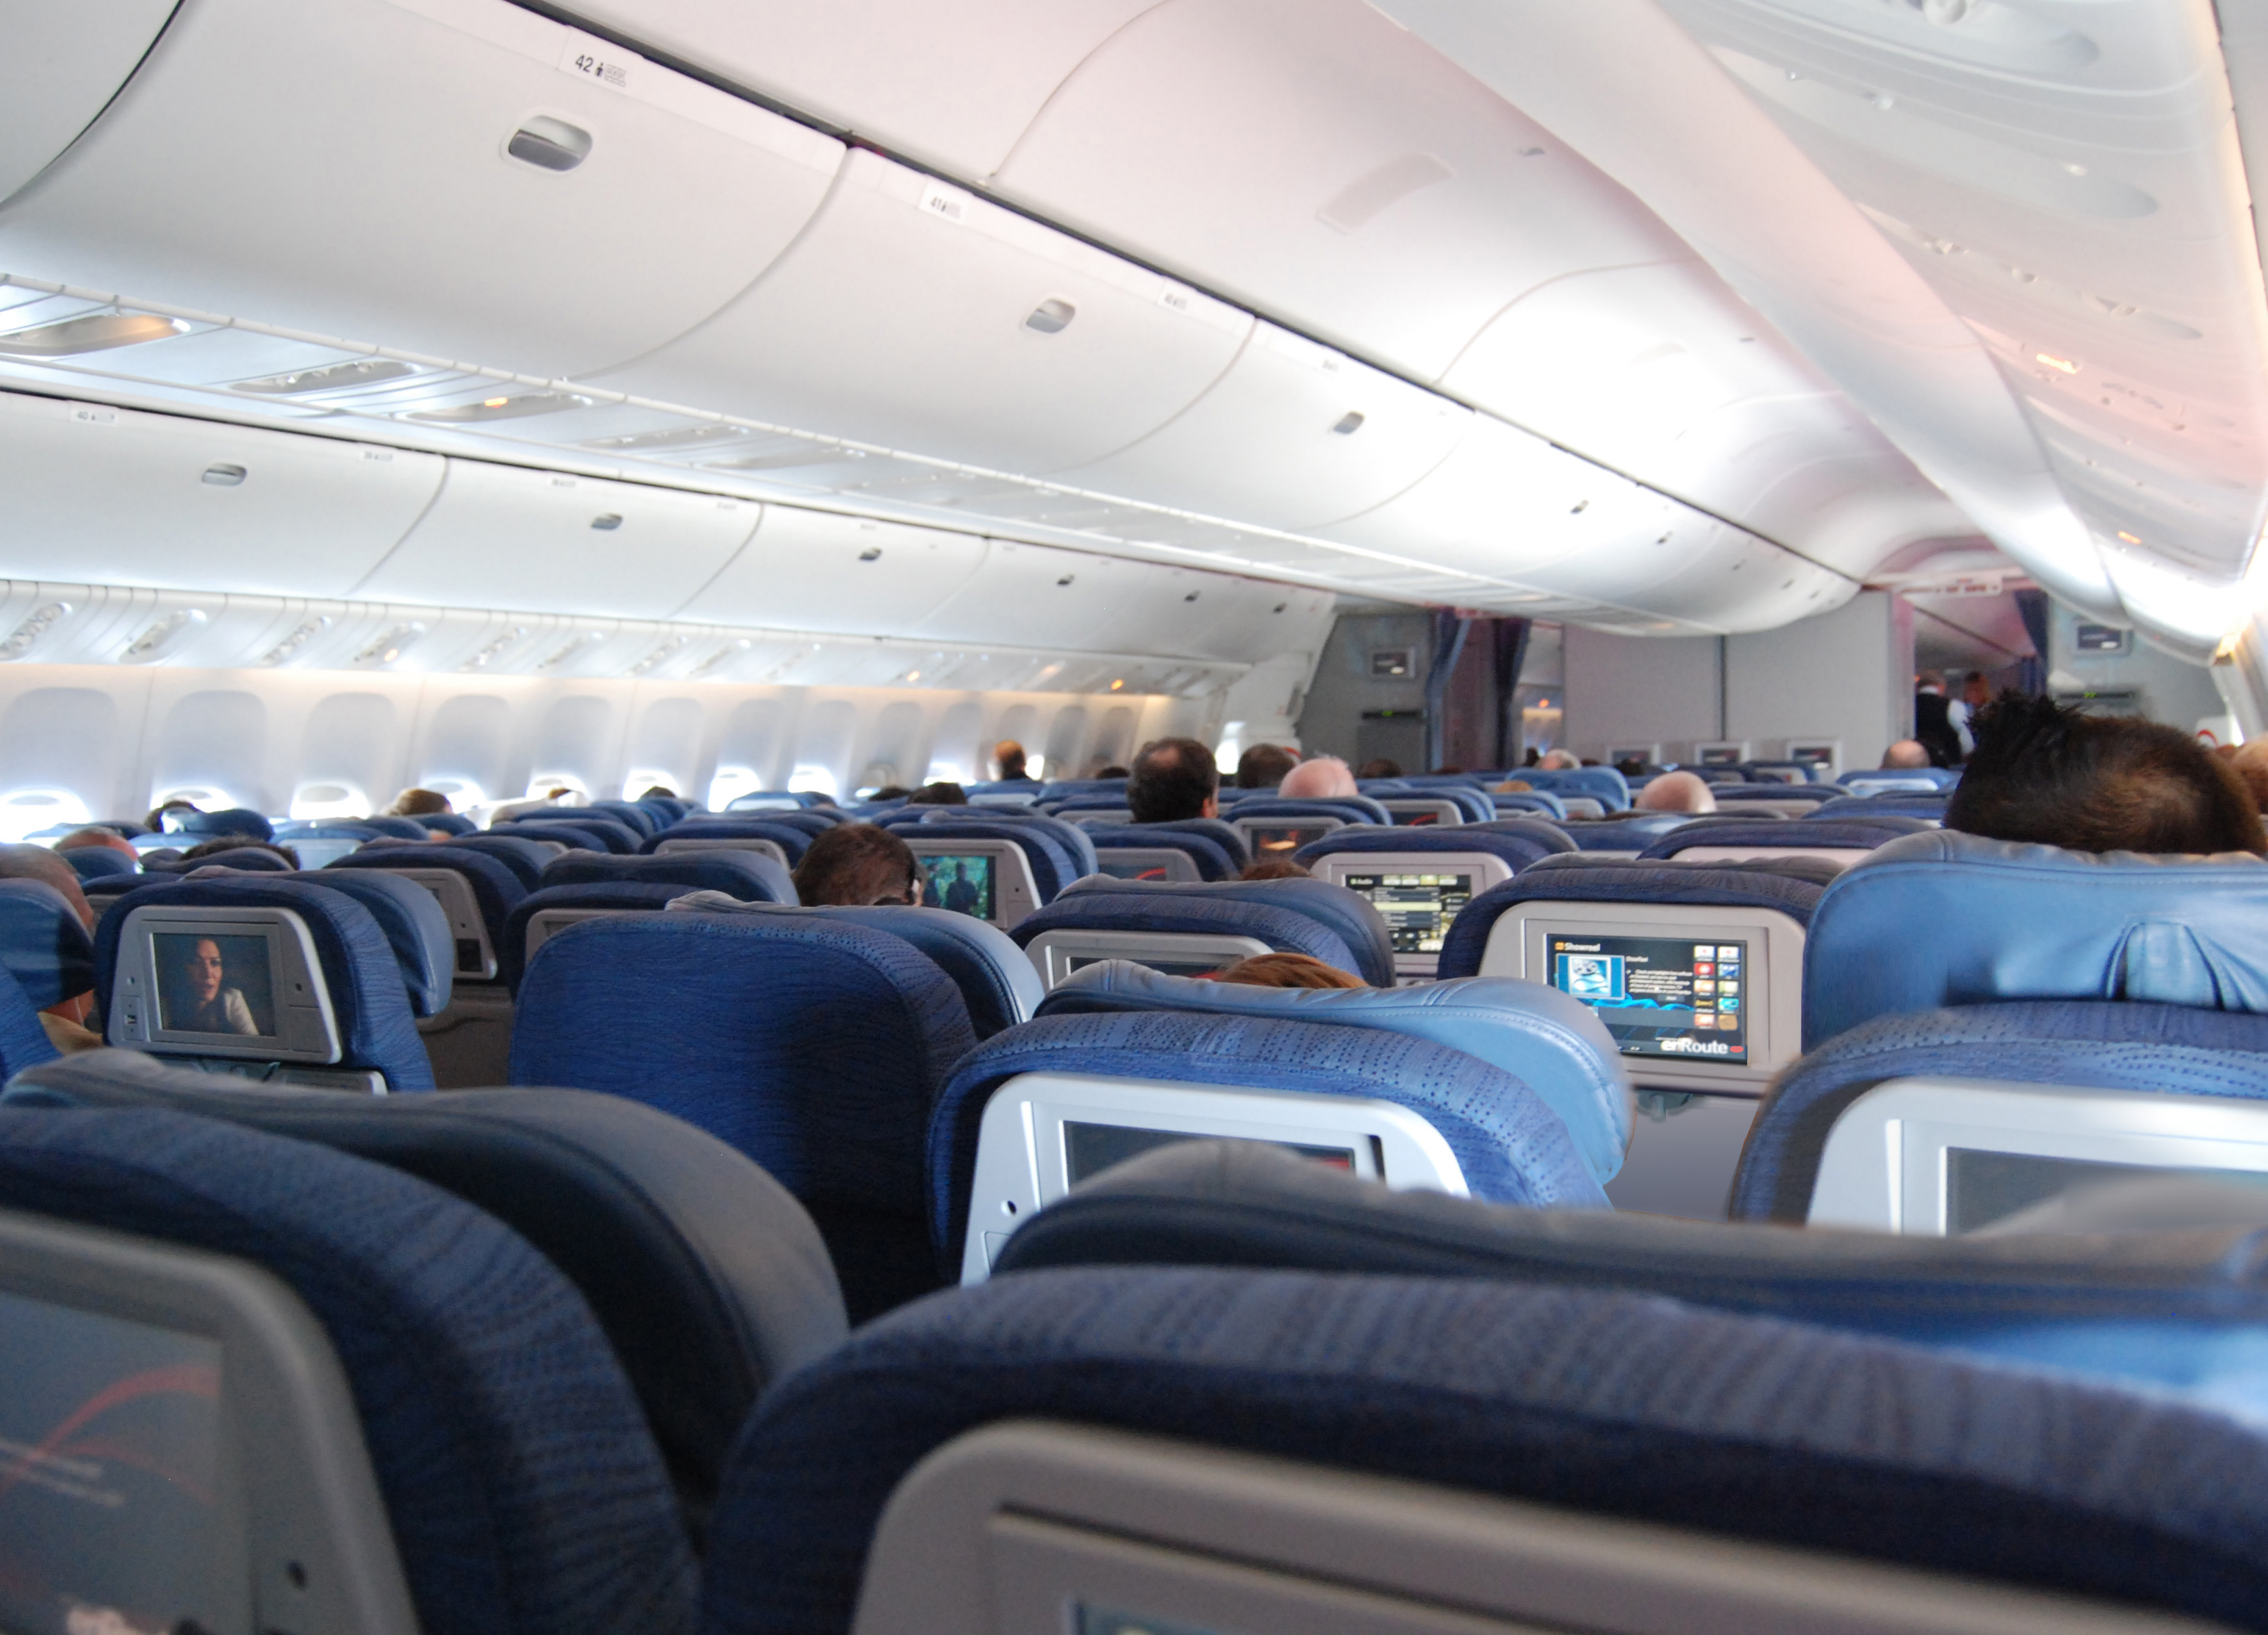 File:Air Canada Economy interior 777.jpg - Wikipedia